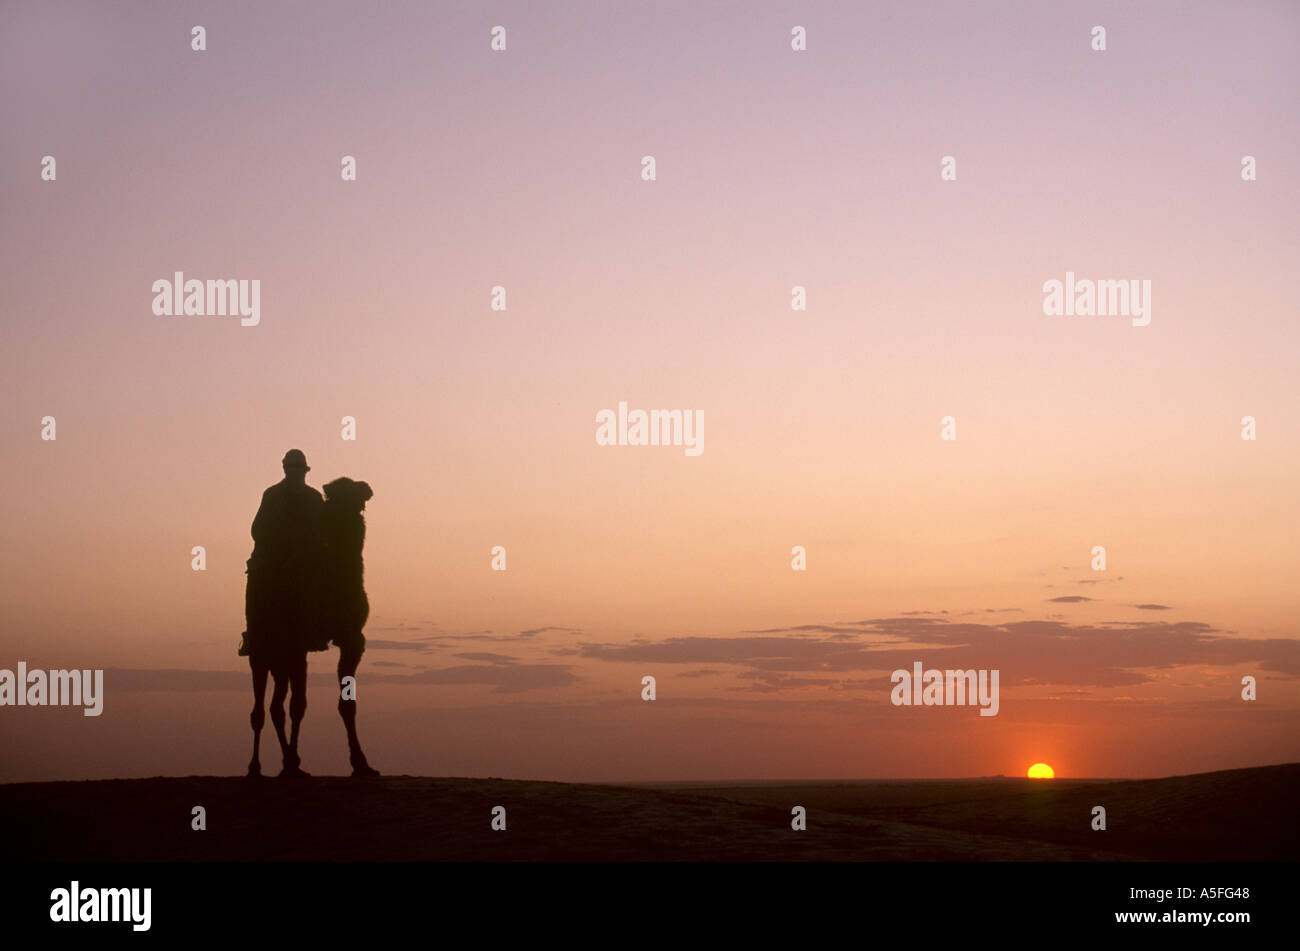 Kamel und Beduinen-Reiter bei Sonnenuntergang, Douz, Sahara Wüste, Tunesien, Nordafrika Stockfoto